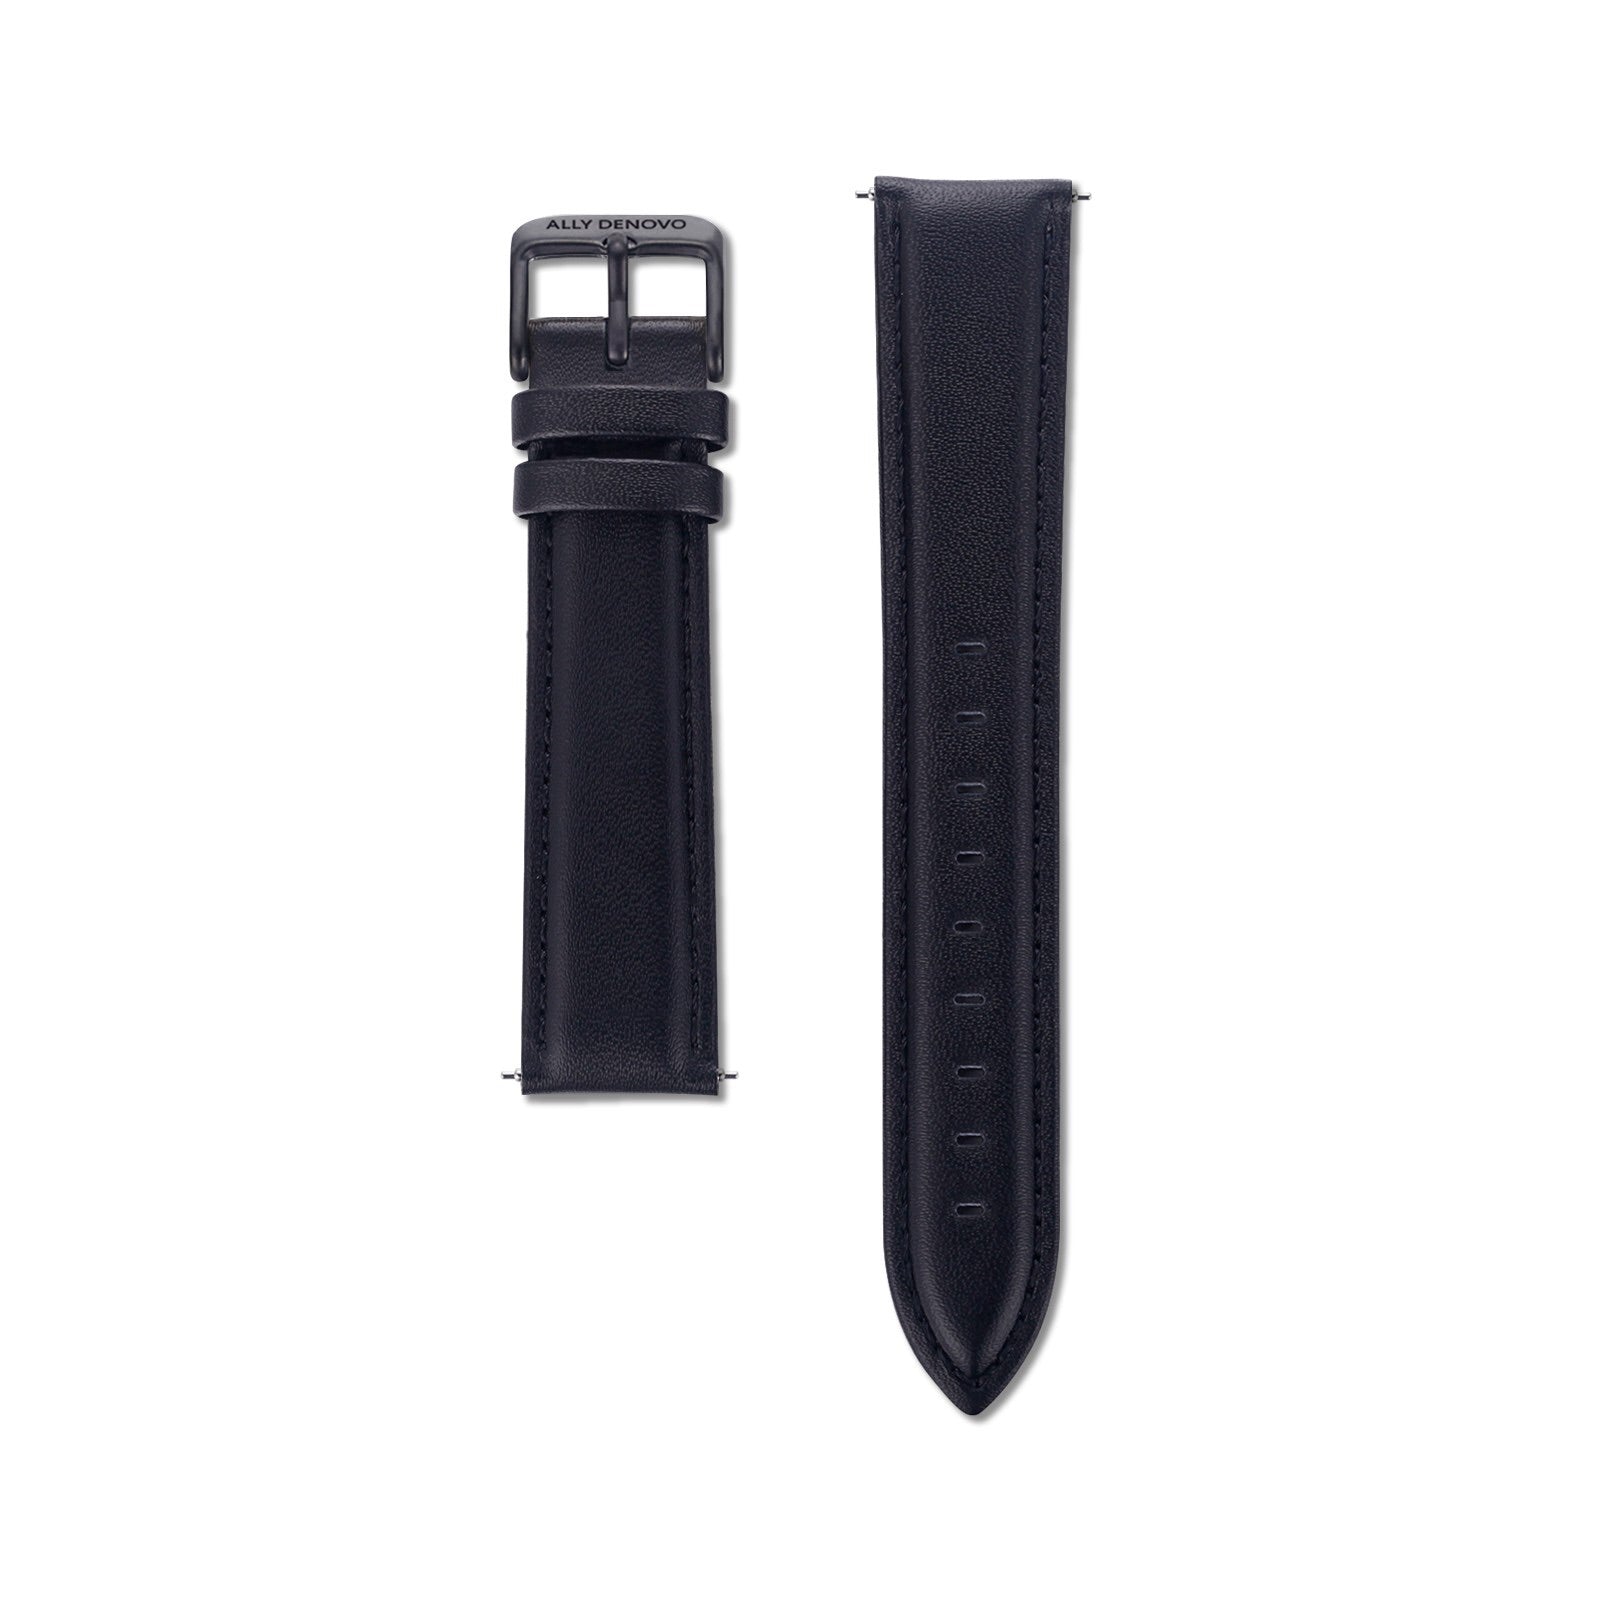 《單獨購買》黑色真皮縫線錶帶18mm黑扣/簡易換錶帶開關式智慧扣環/適用36mm錶盤